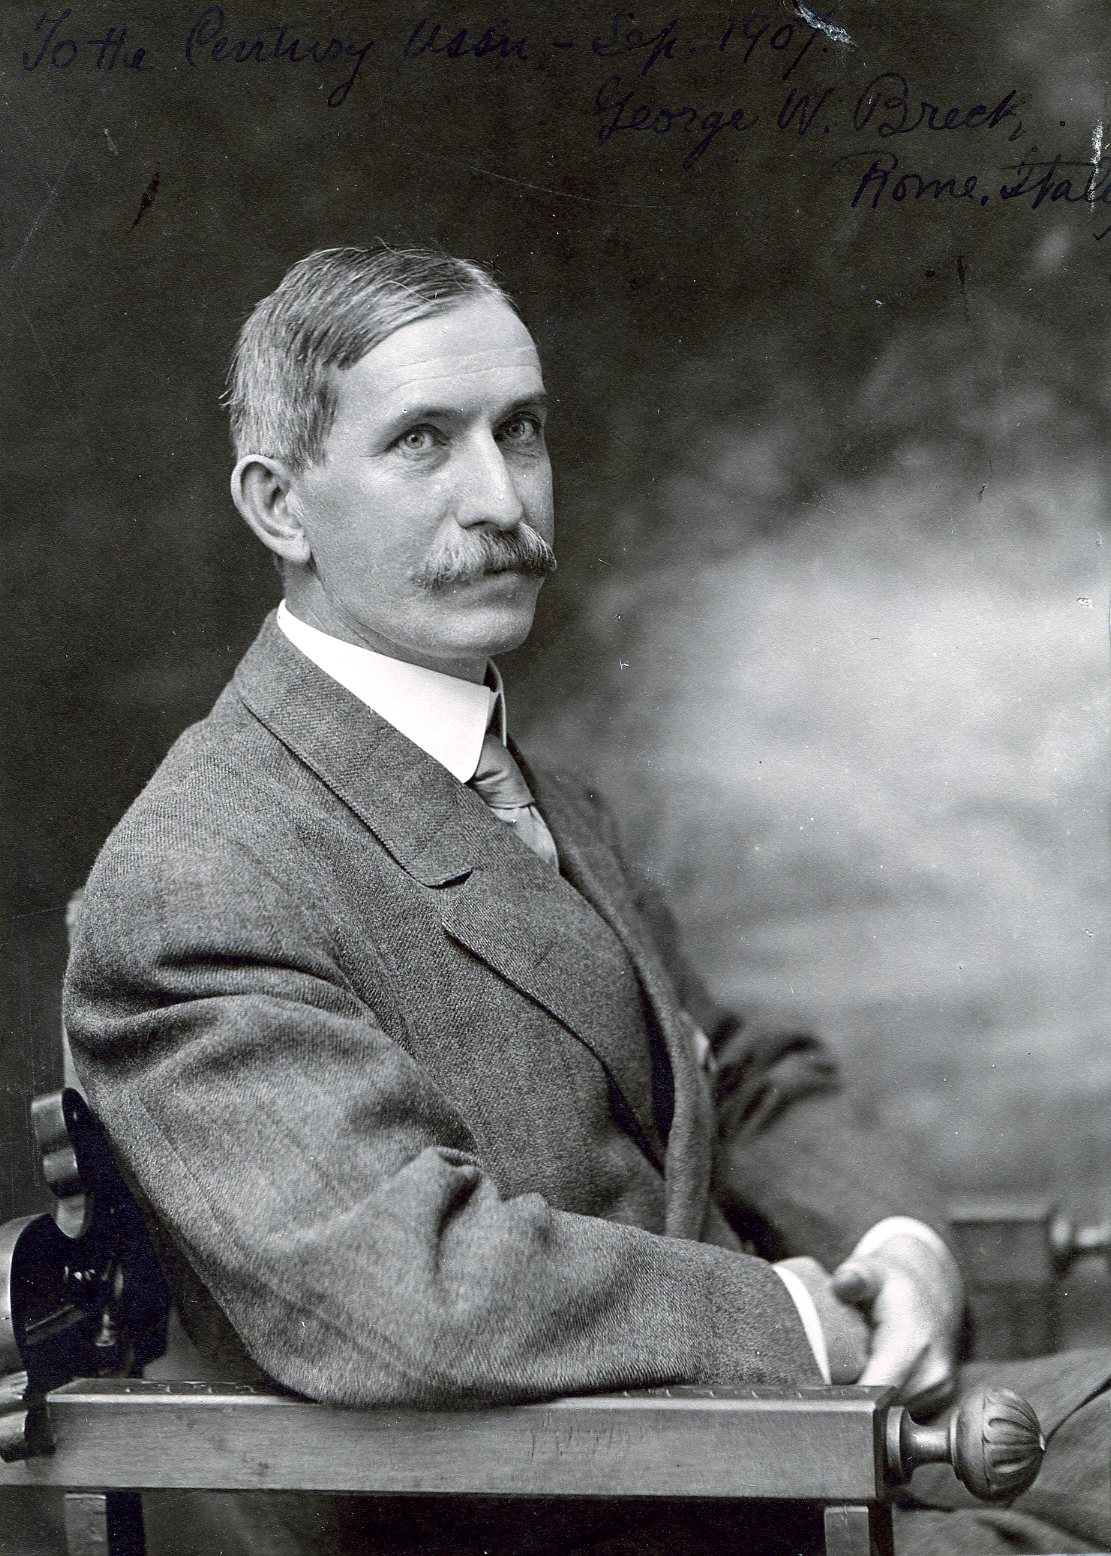 Member portrait of George William Breck